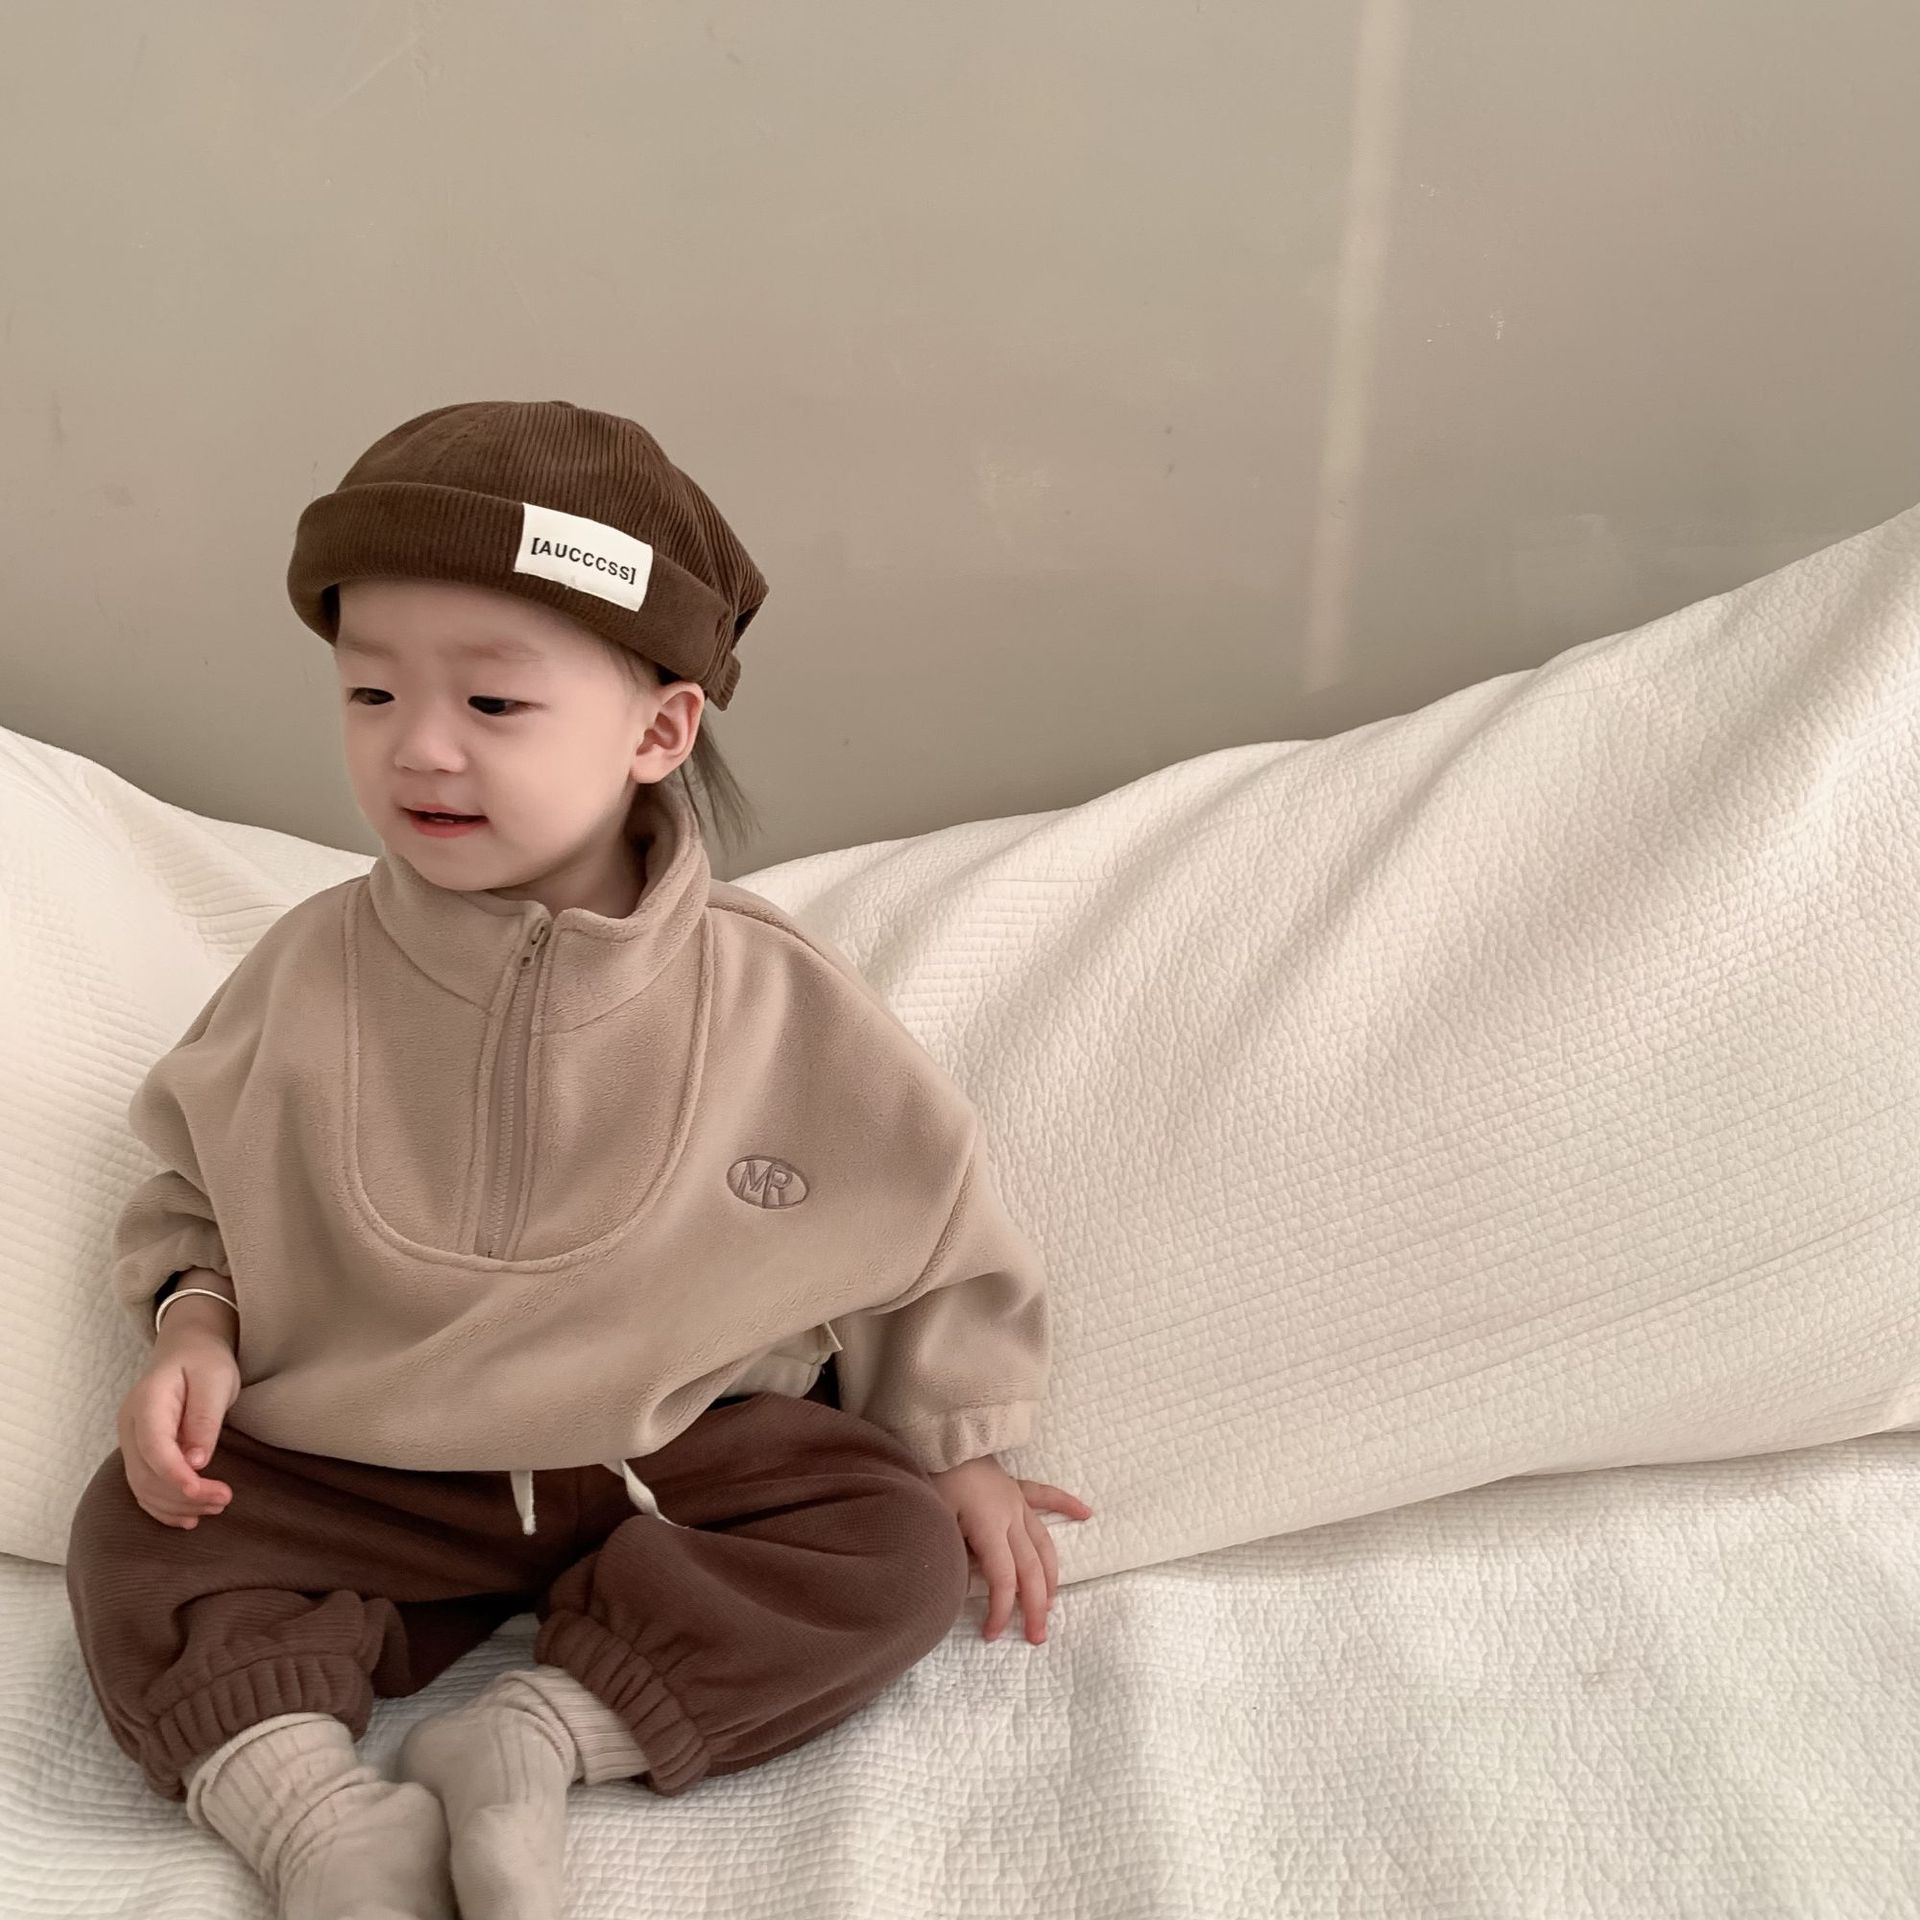 兒童春秋衣服韓版童裝寶寶外出服男童衛衣衛褲兩件套嬰兒春季套裝